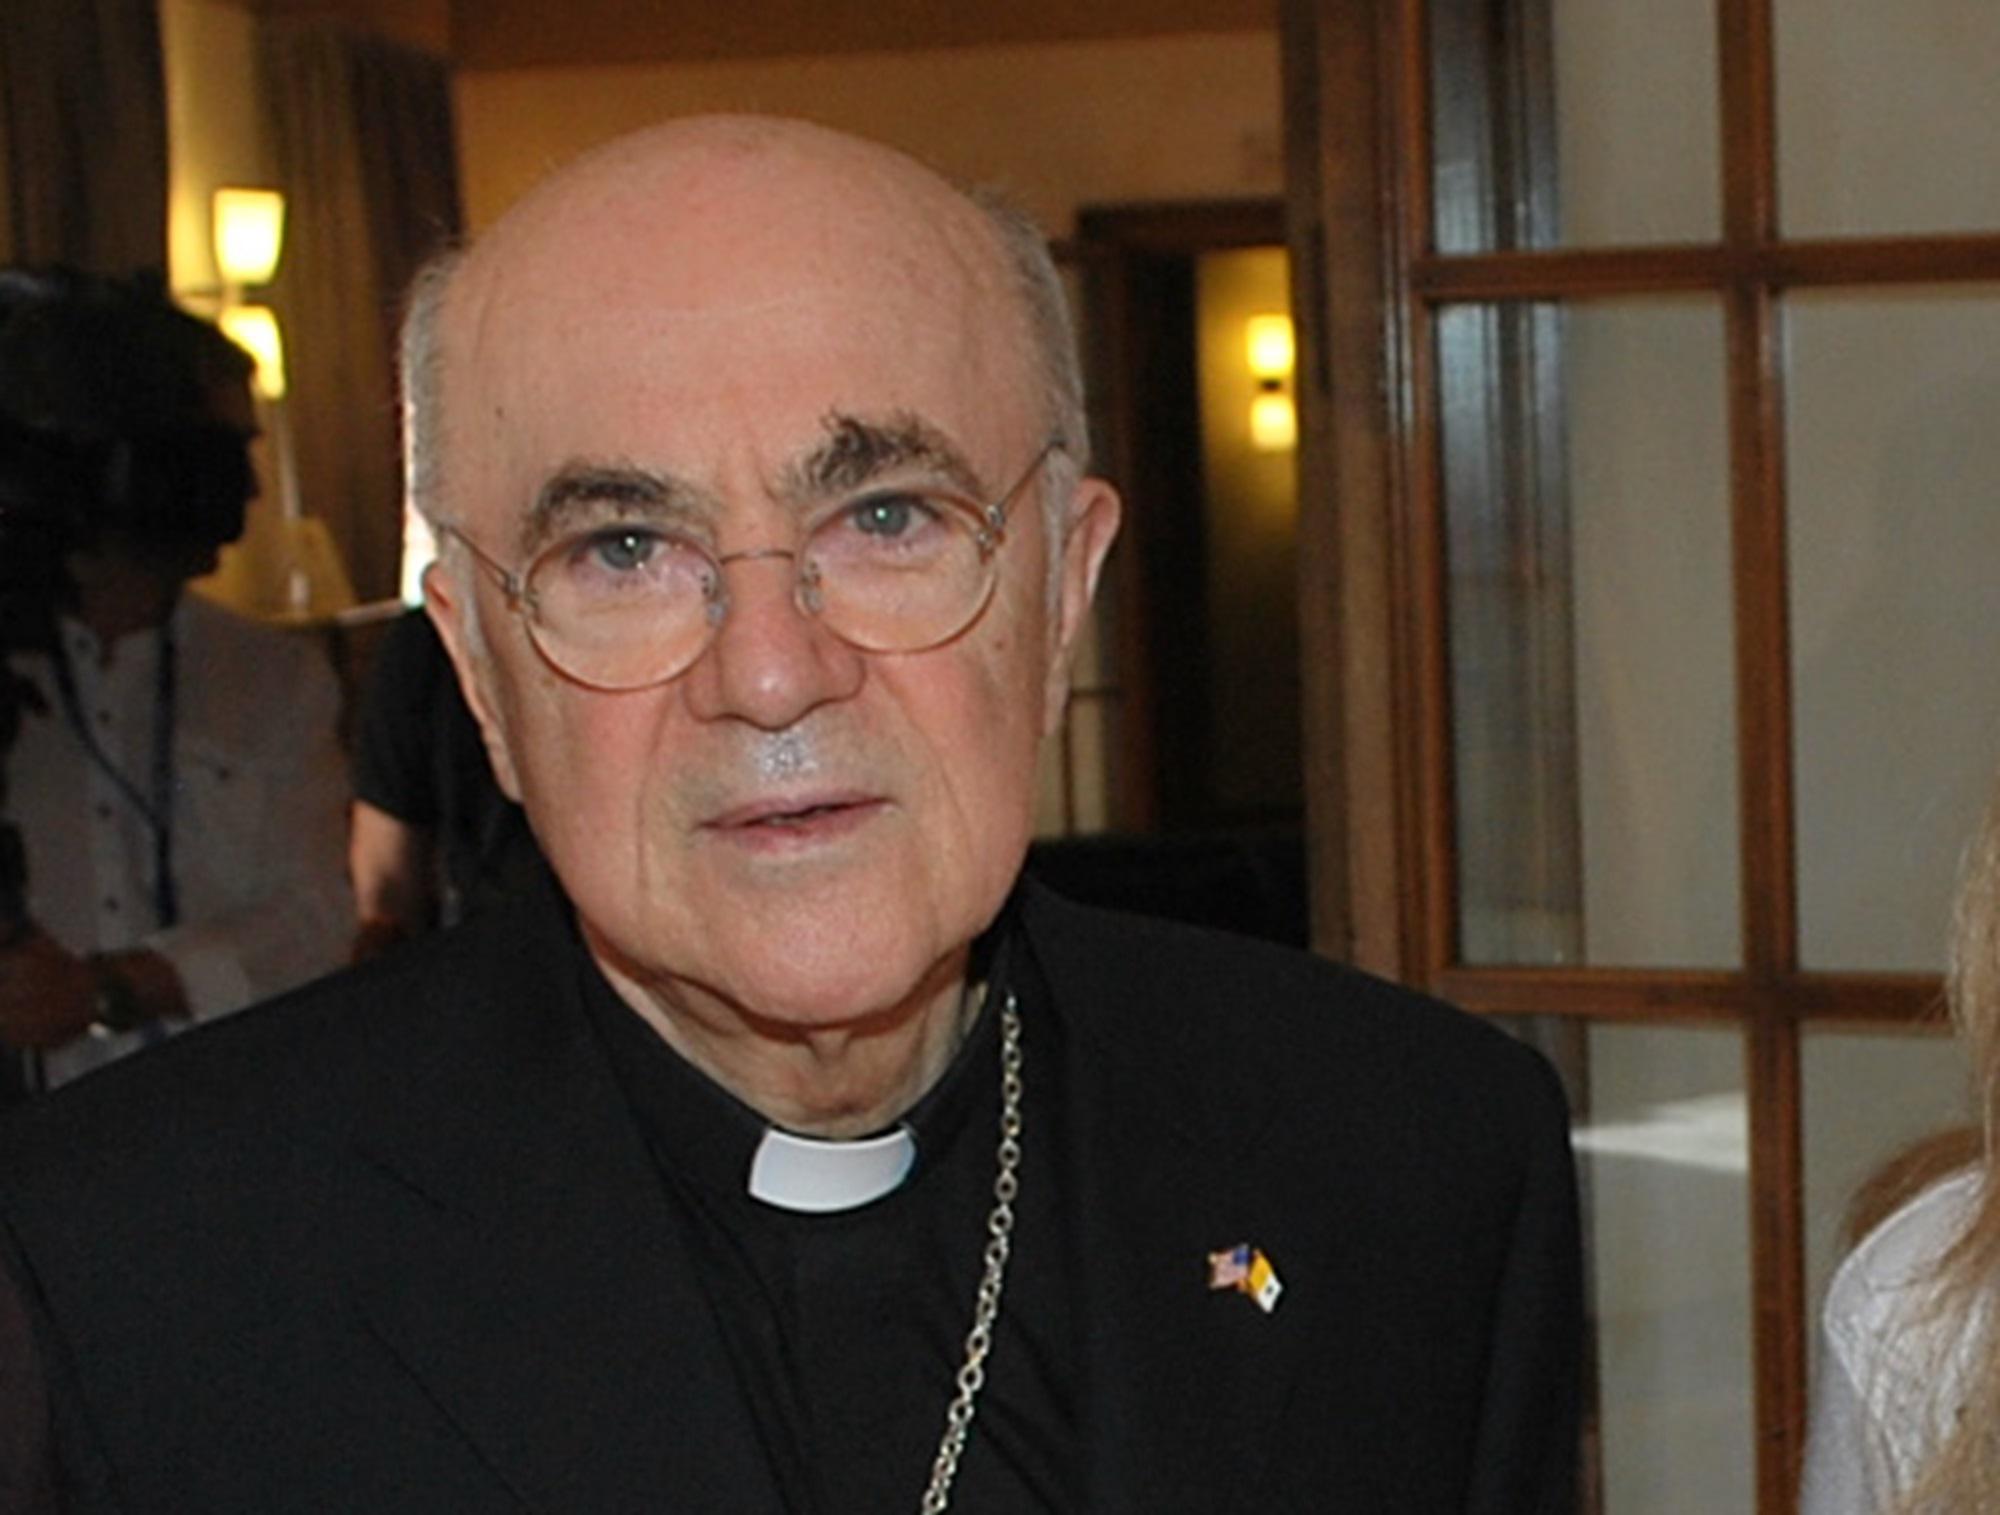 Vaticano - monsignor Viganò accusato di scisma: Io come Lefebvre - schema si ripete